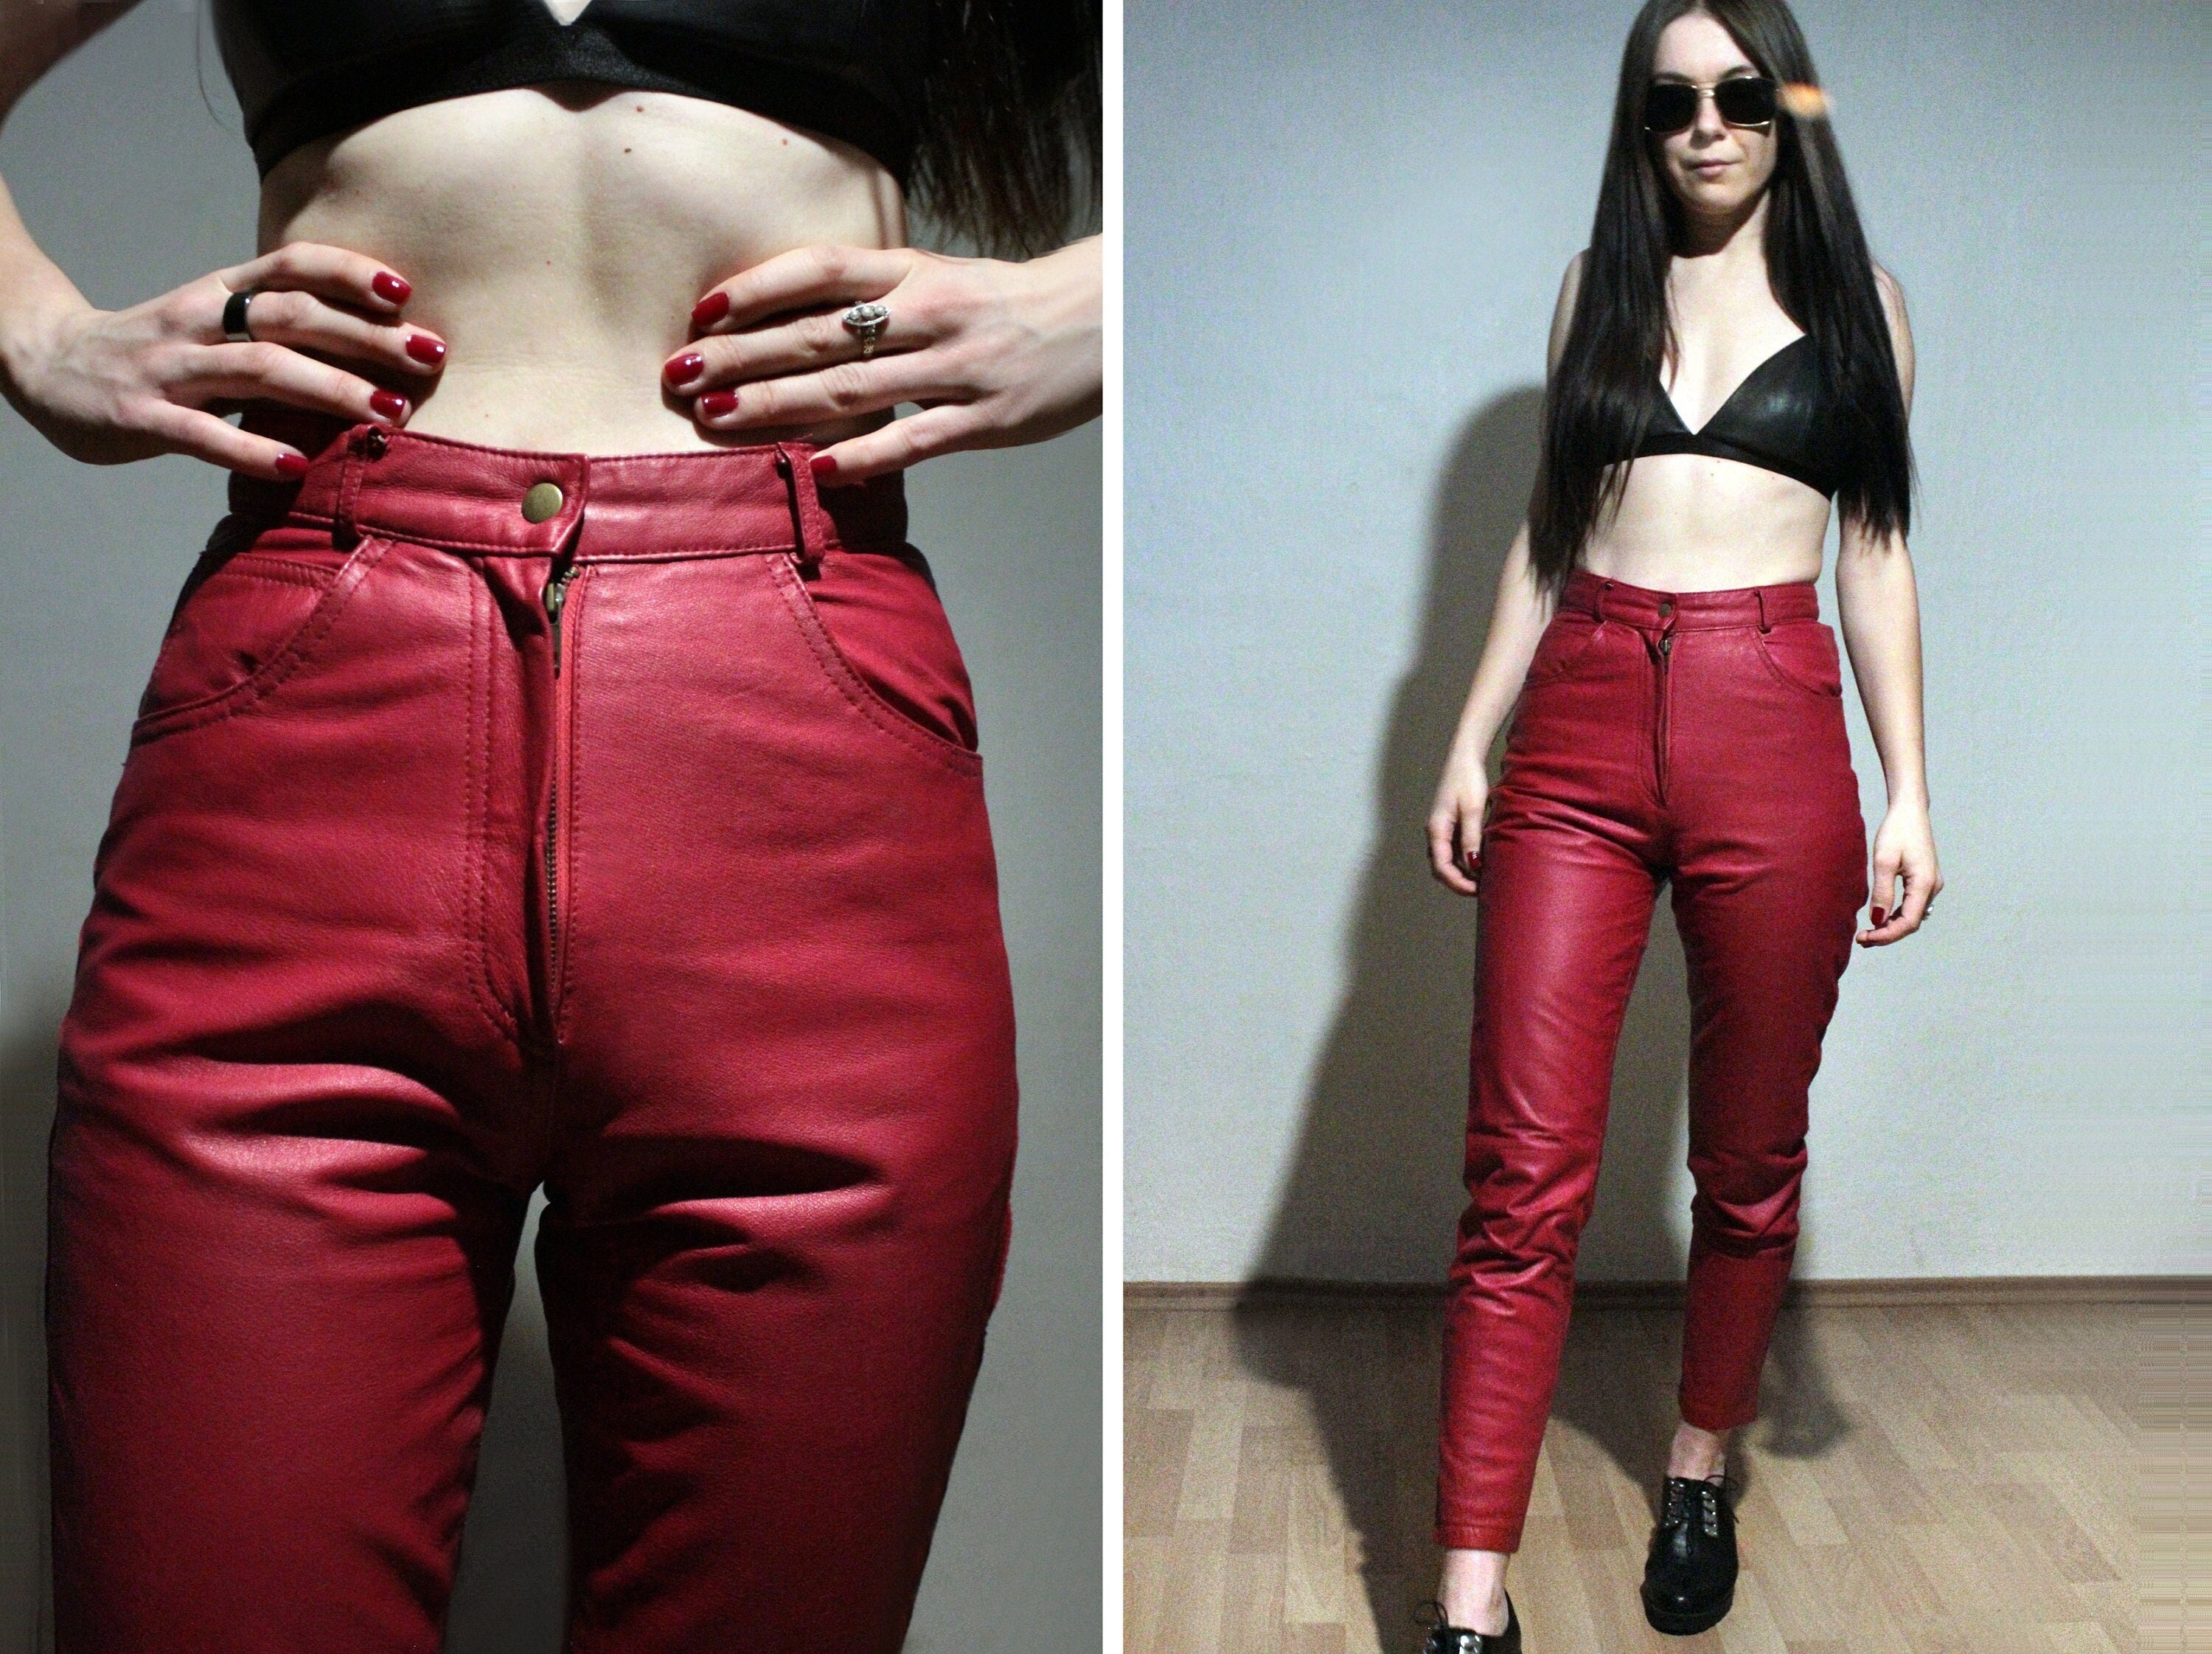 Billie Lourd in red leather trousers by DWJones28 on DeviantArt